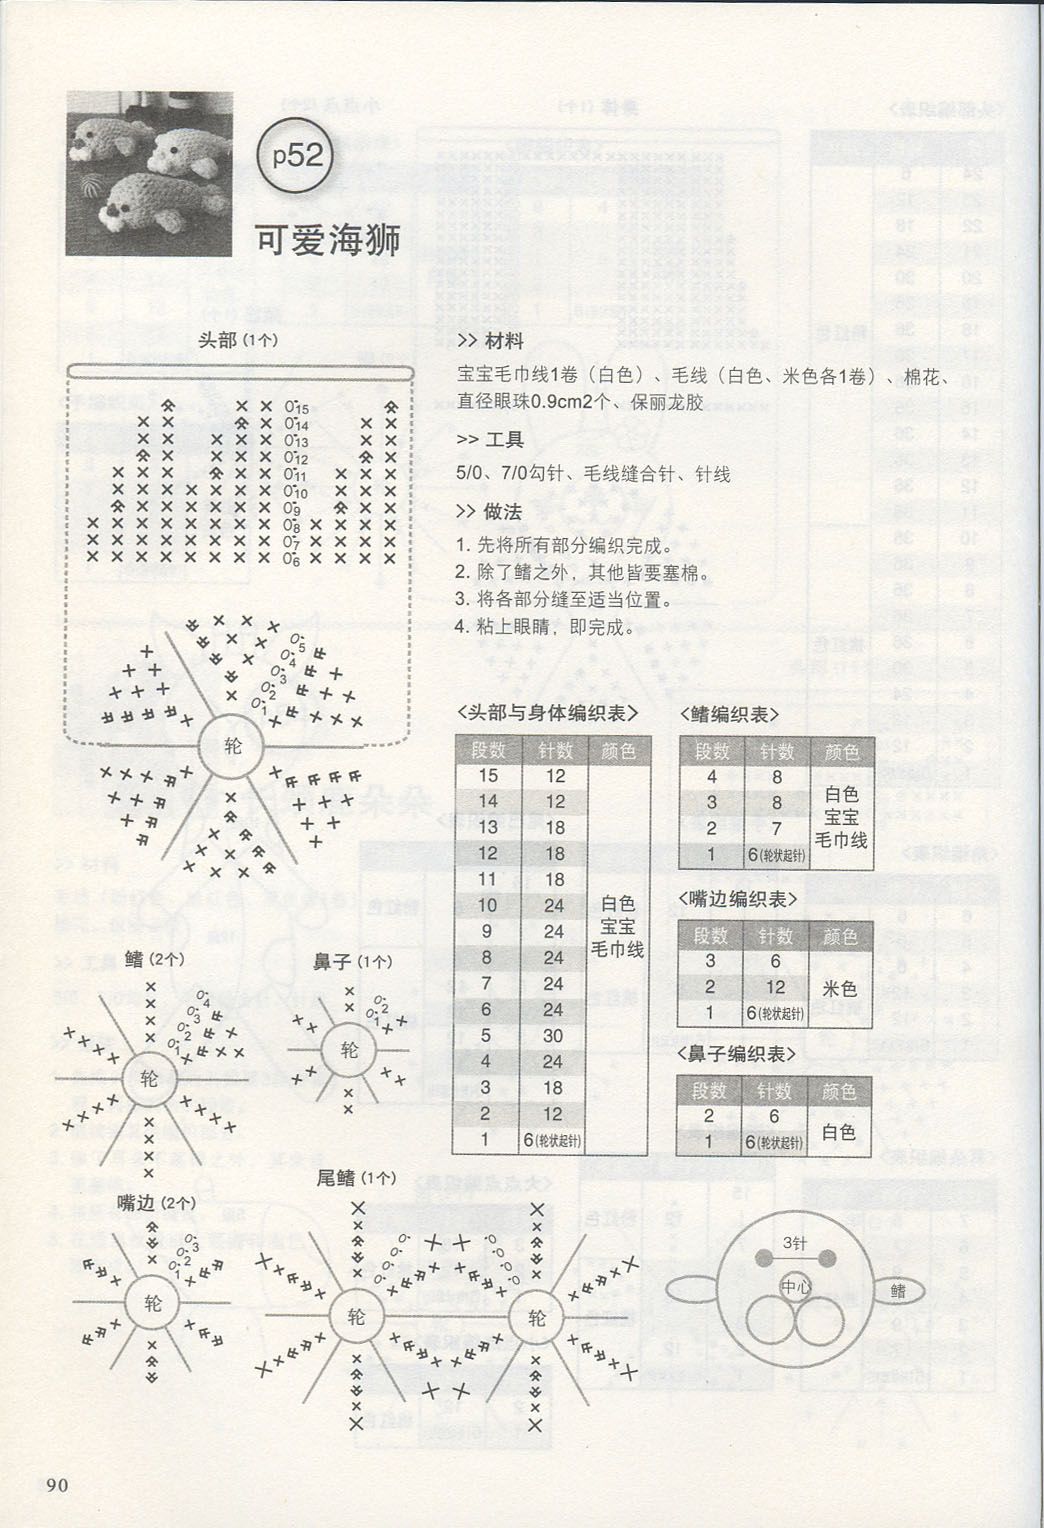 Colored seals amigurumi pattern (2)